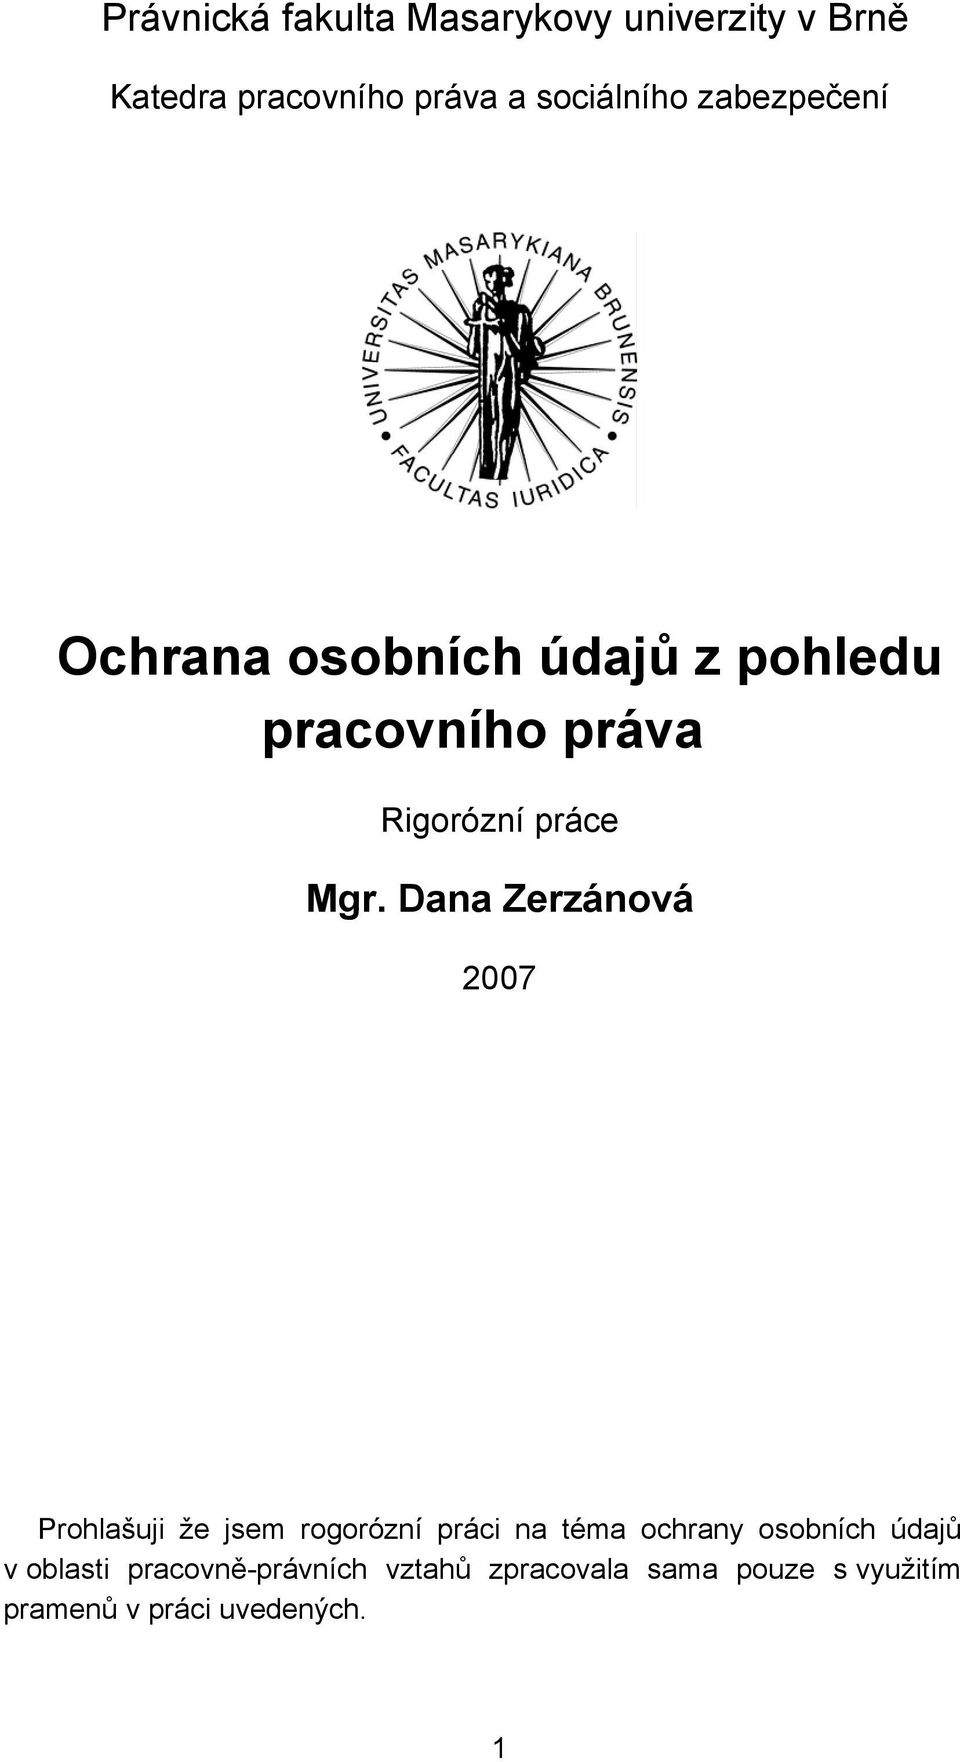 Dana Zerzánová 2007 Prohlašuji že jsem rogorózní práci na téma ochrany osobních údajů v